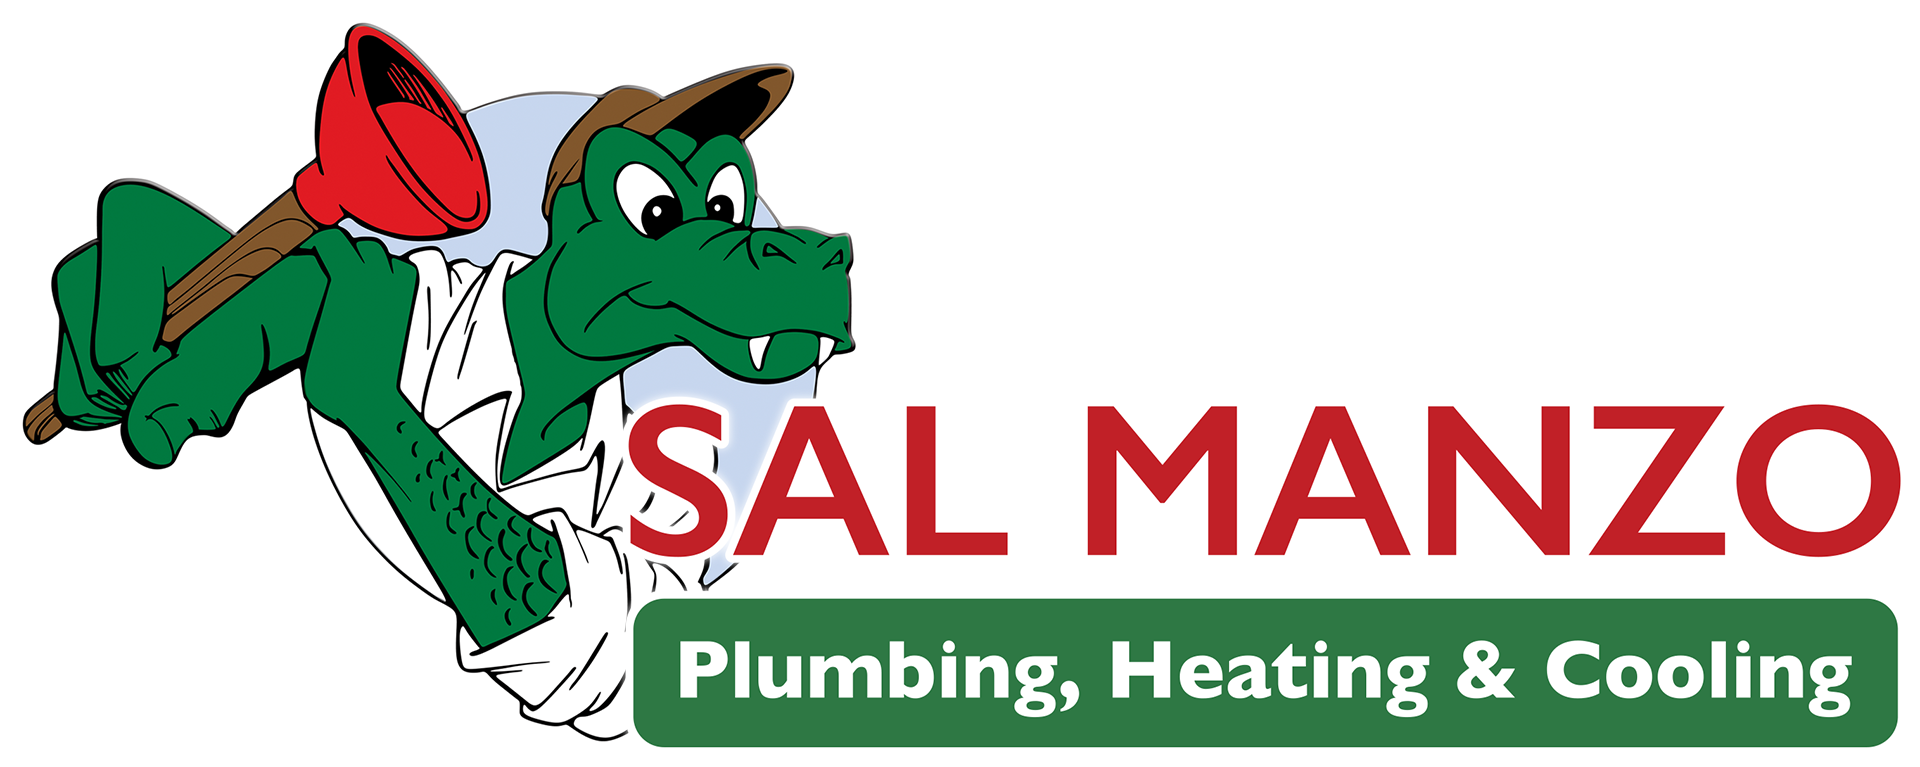 Sal Manzo Plumbing, Heating & Cooling